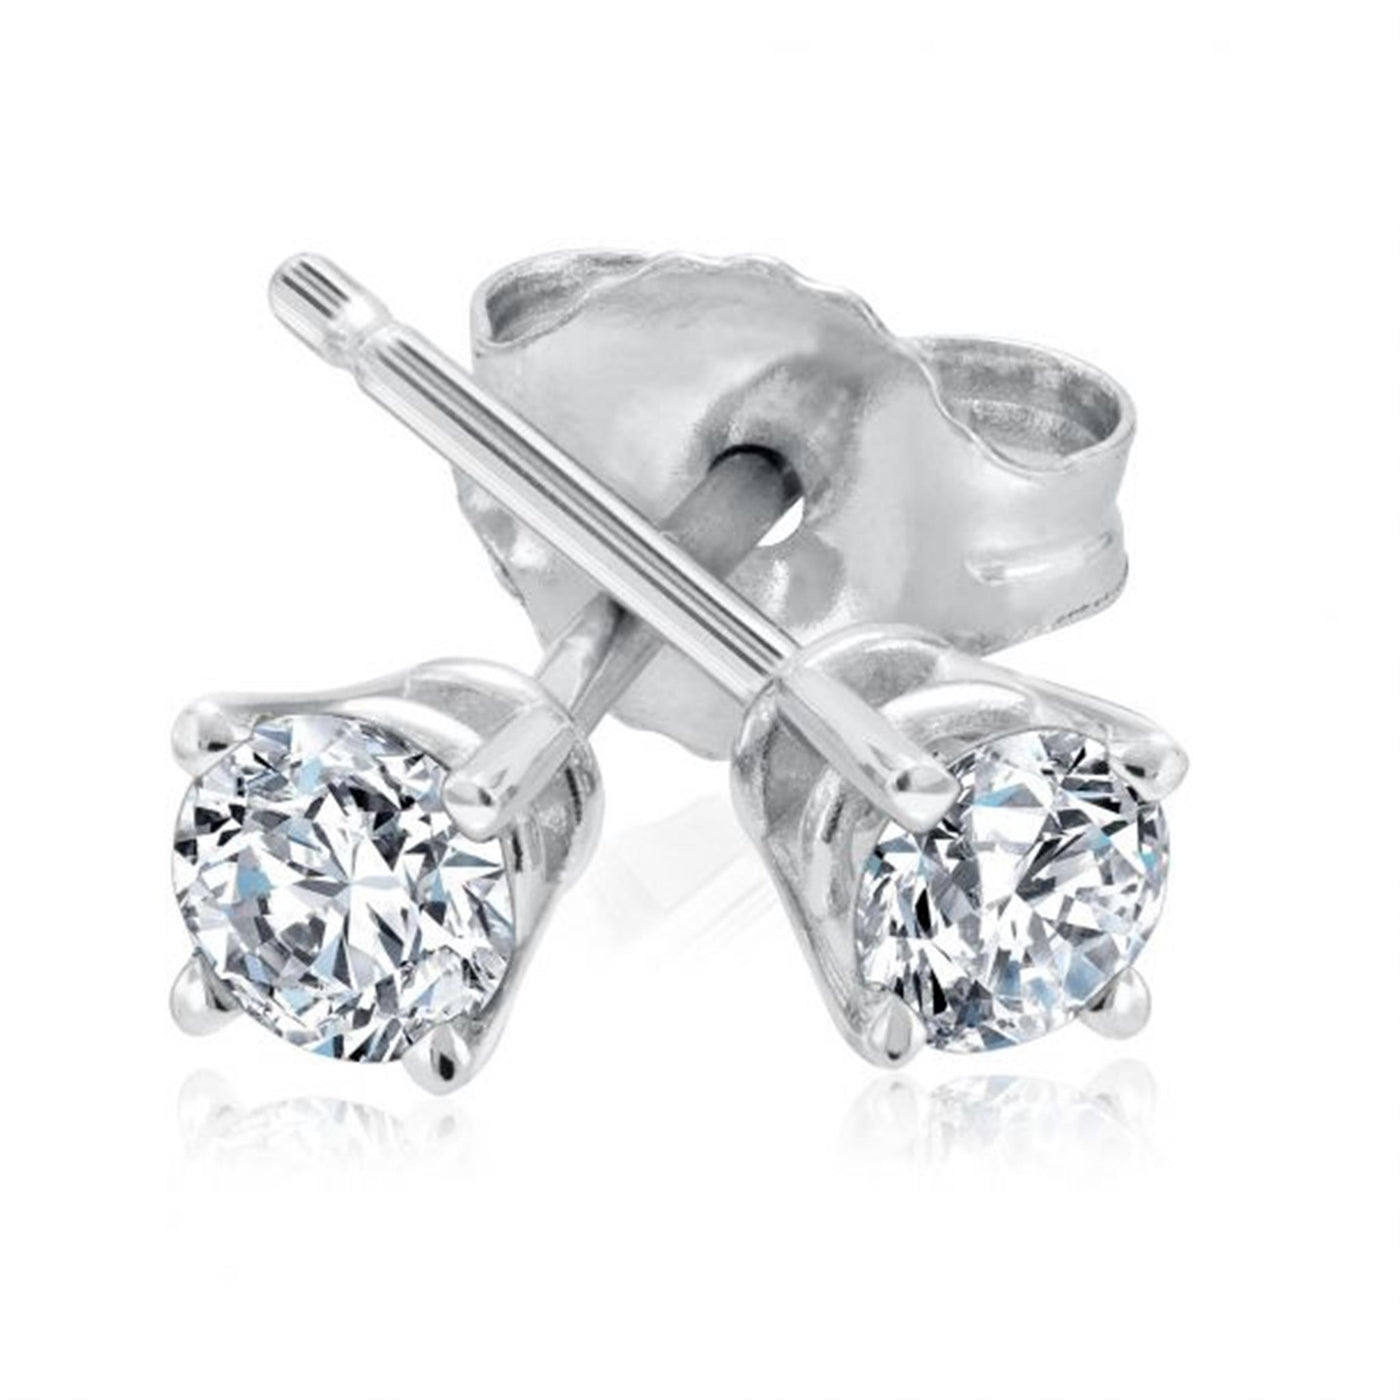 14K White Gold 2.18ctw Diamond Stud Earrings in Four Prong Basket Settings